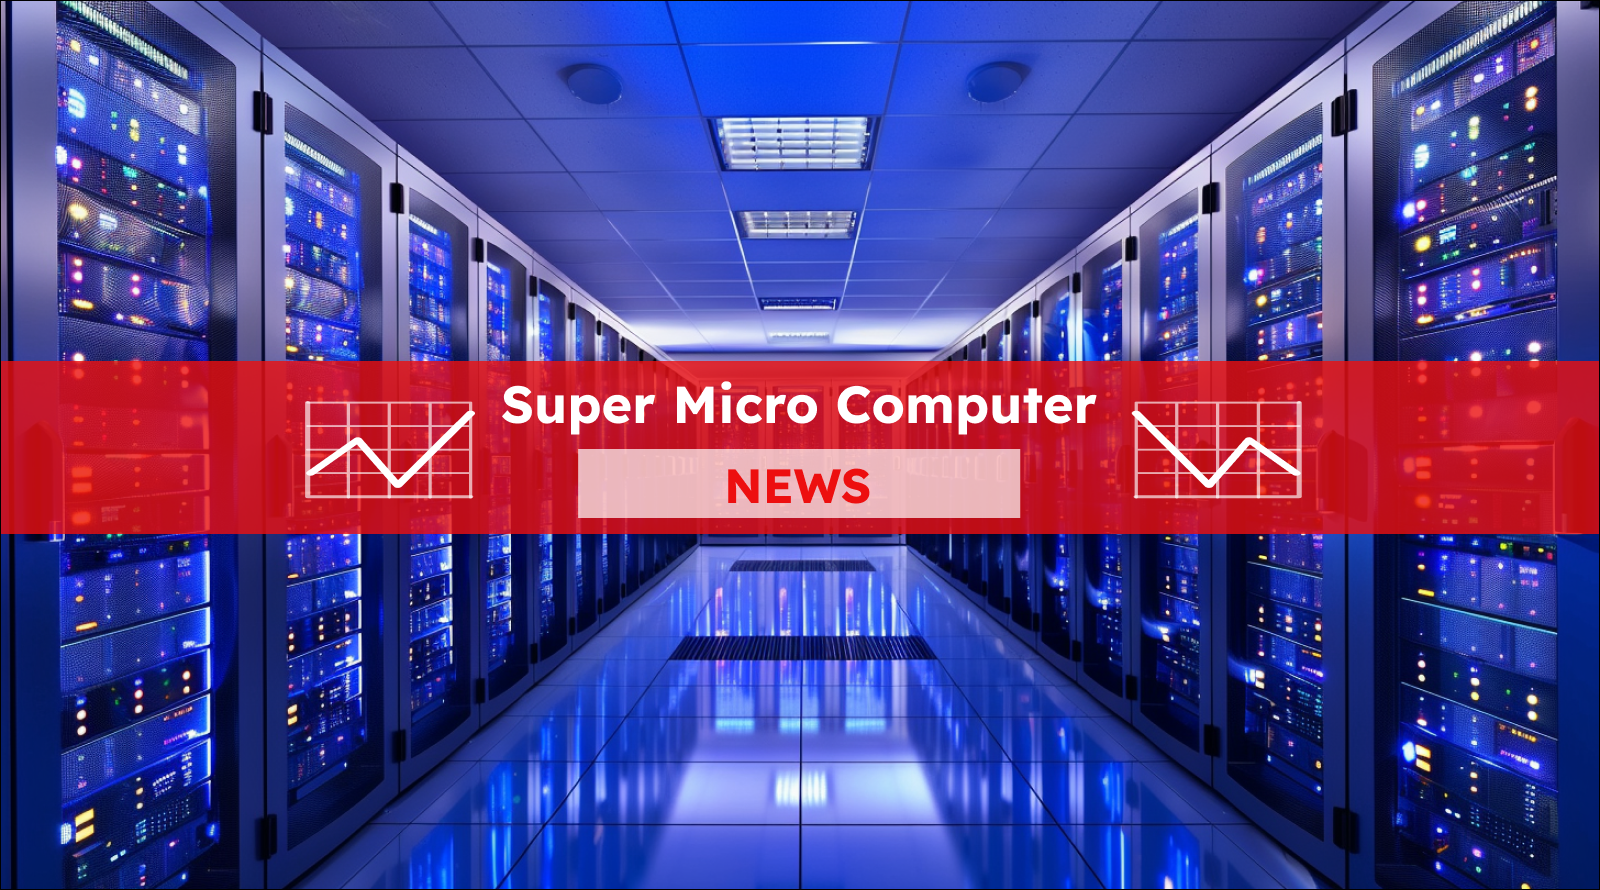 Ein Rechenzentrum mit mehreren Reihen von Serverracks, die mit blauen und violetten Lichtern beleuchtet sind, über dem Bild ist ein Super Micro Computer NEWS-Banner